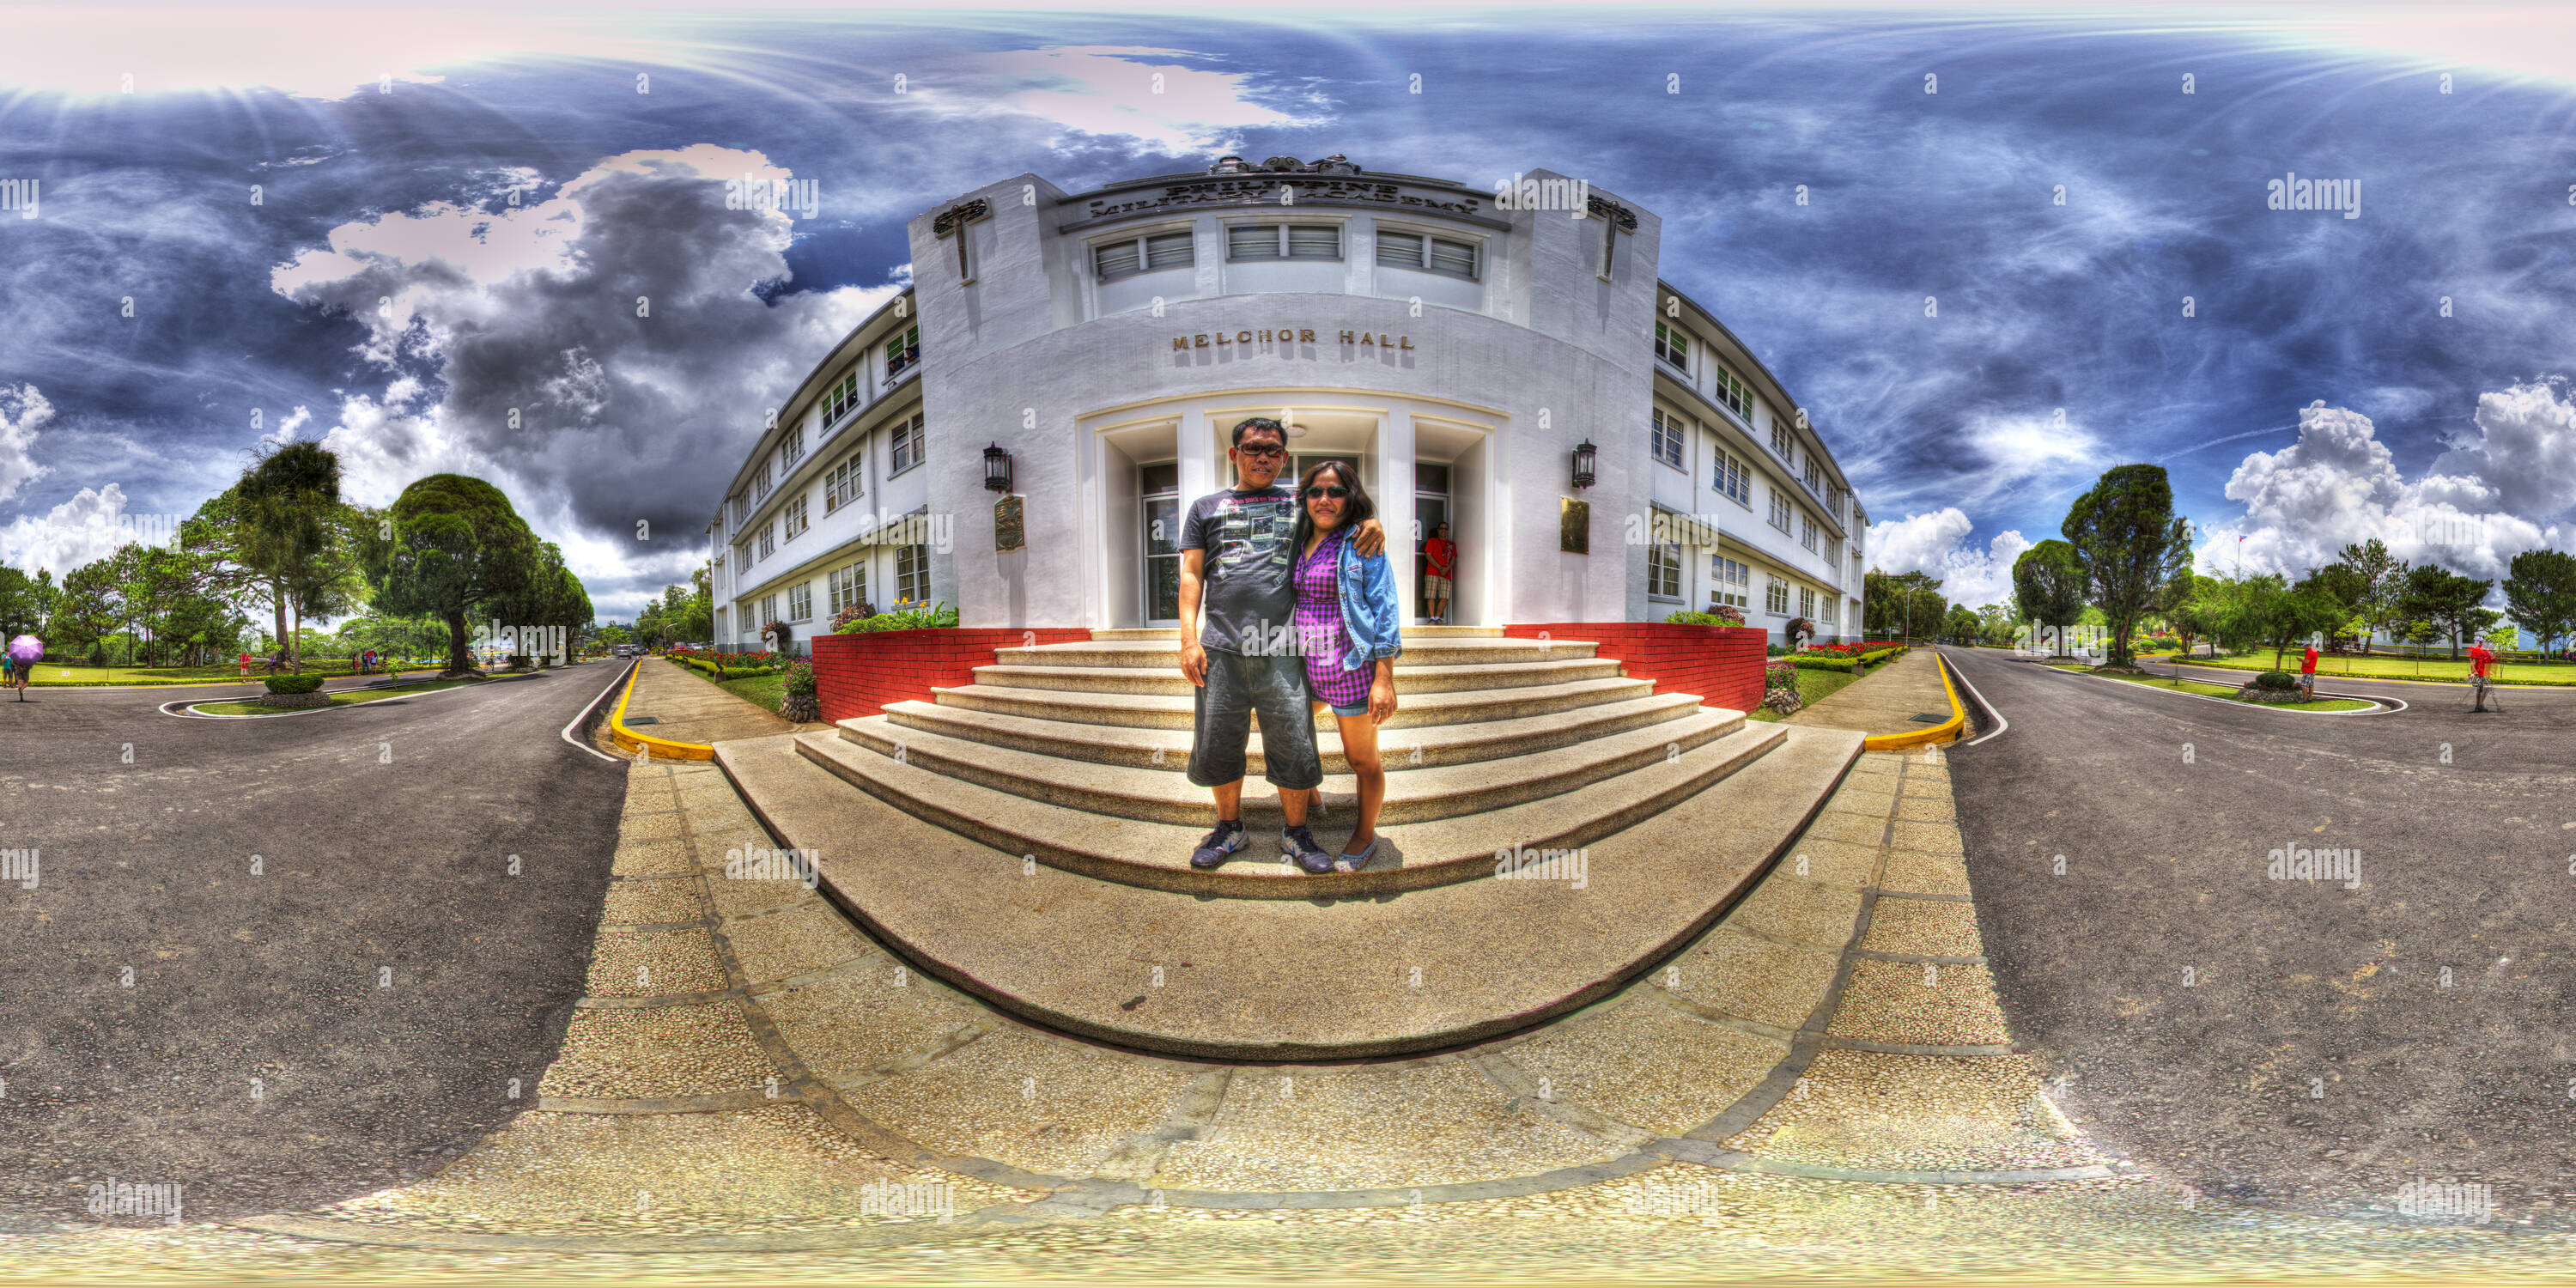 Vista panorámica en 360 grados de Melchor Hall, PMA, de la ciudad de Baguio, con Arnel &Amp; Sarah Alota